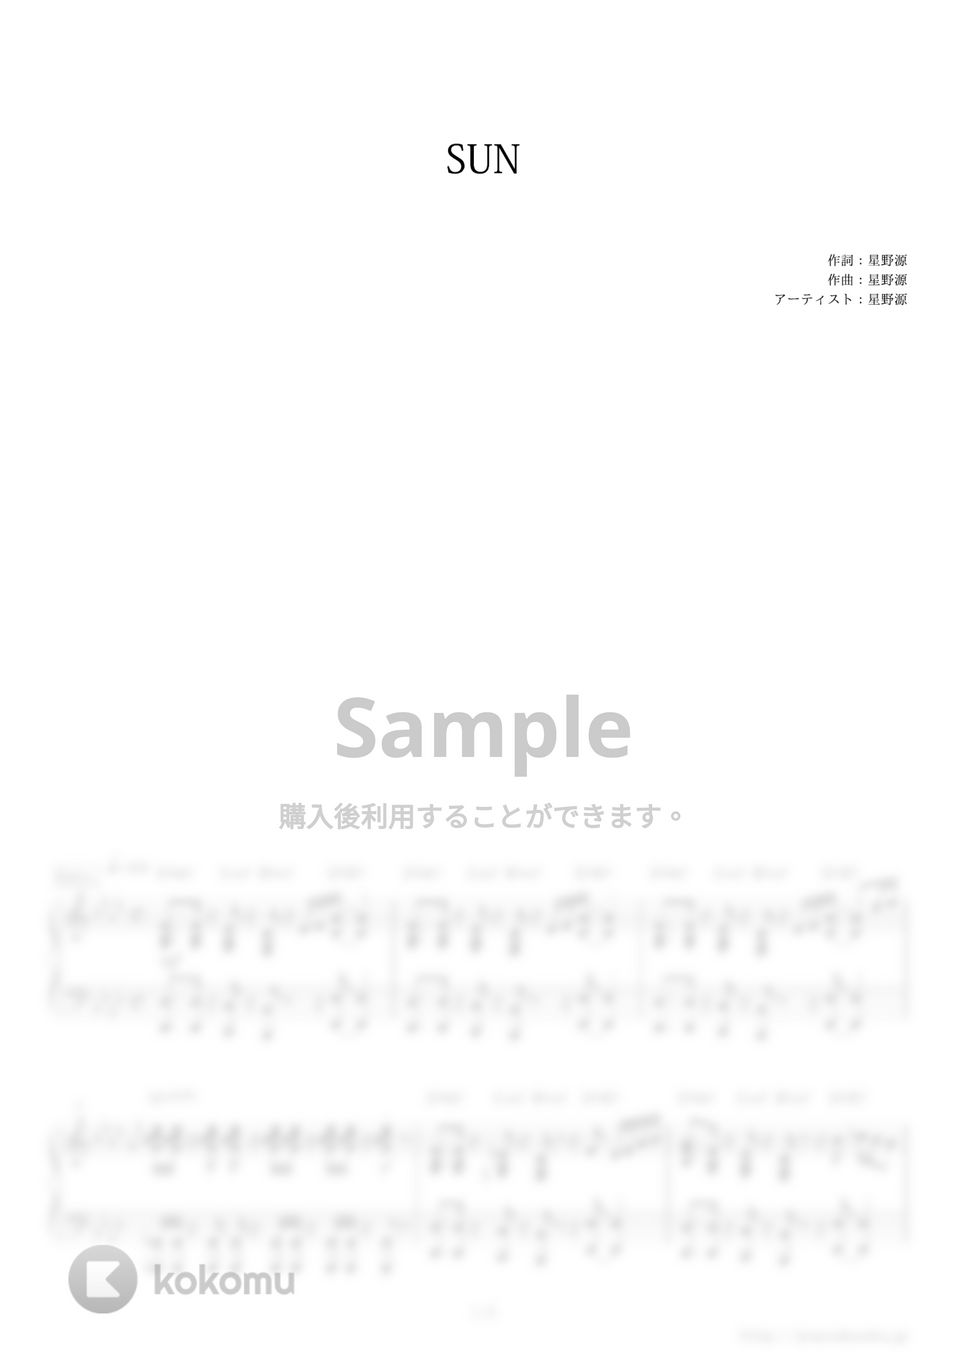 星野源 - SUN (ドラマ『心がポキッとね』主題歌) by ピアノの本棚